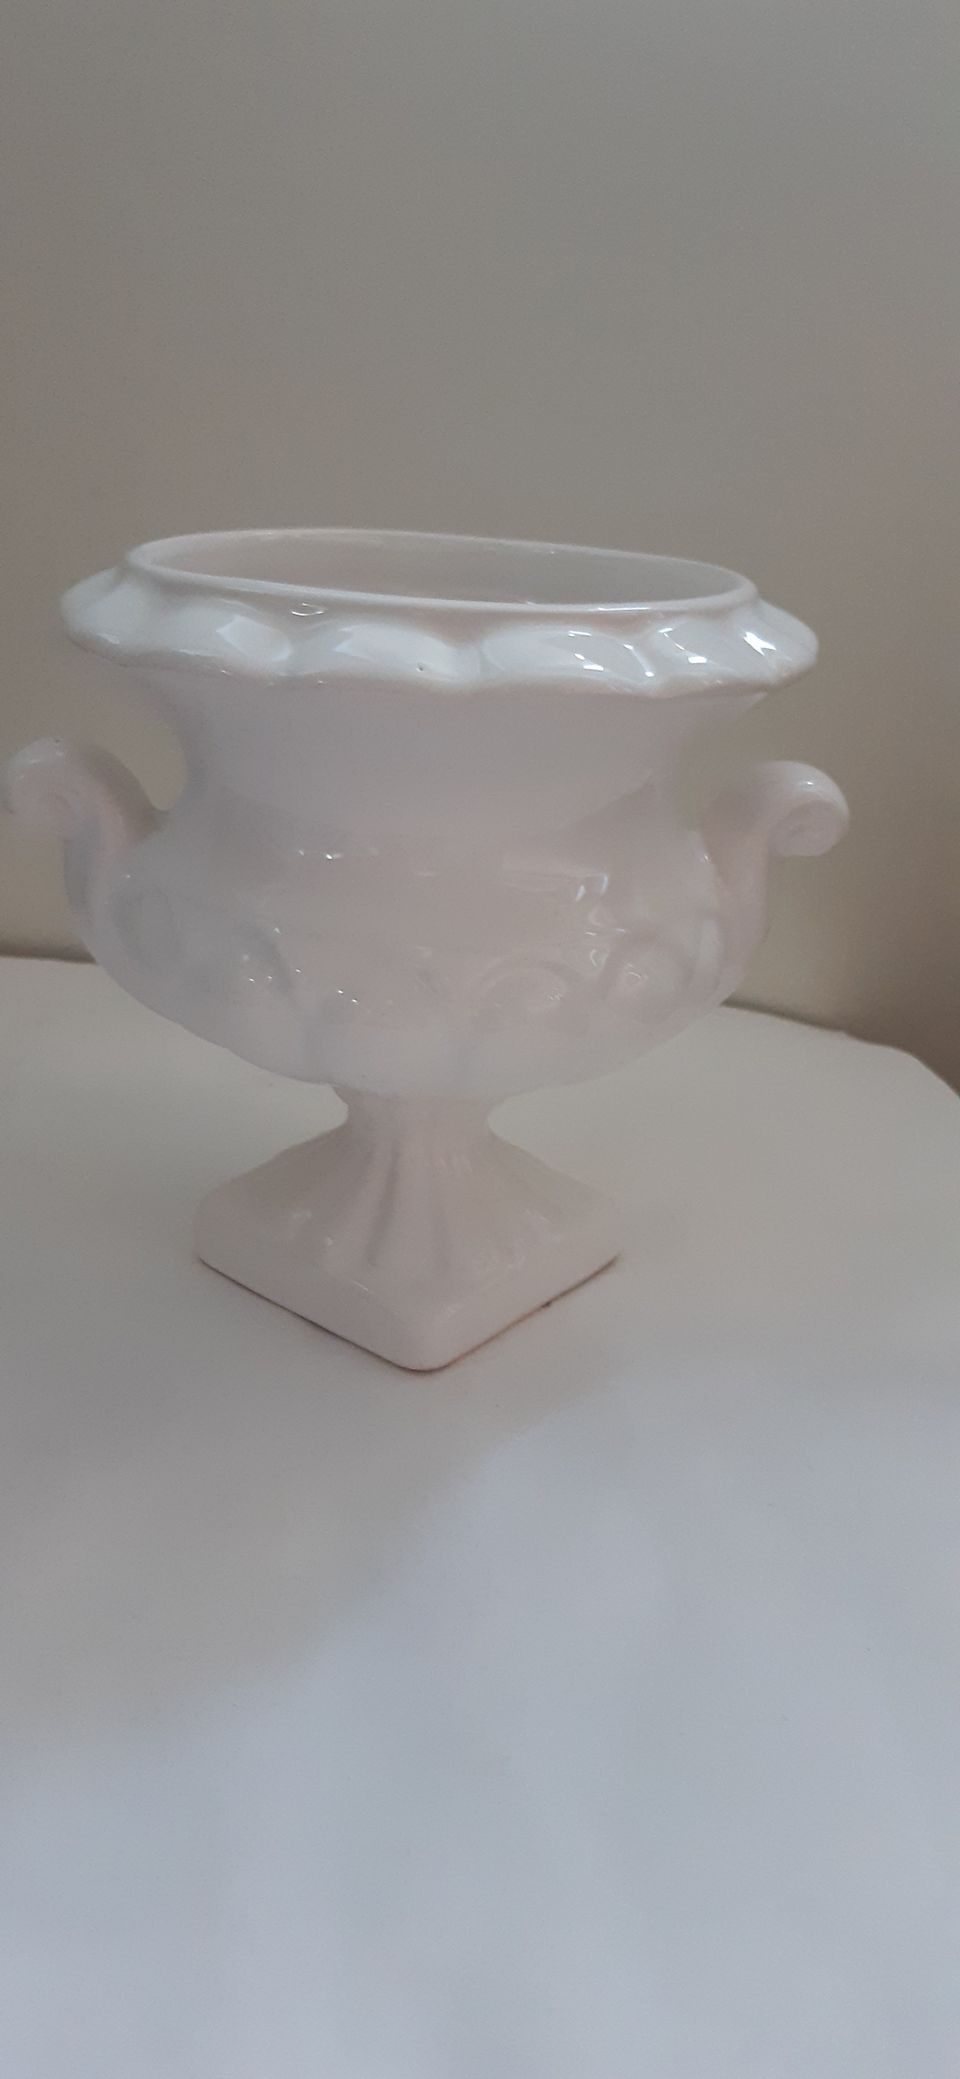 Valkoinen keramiikkakulho/vaasi/maljakko kork. 13,5 cm